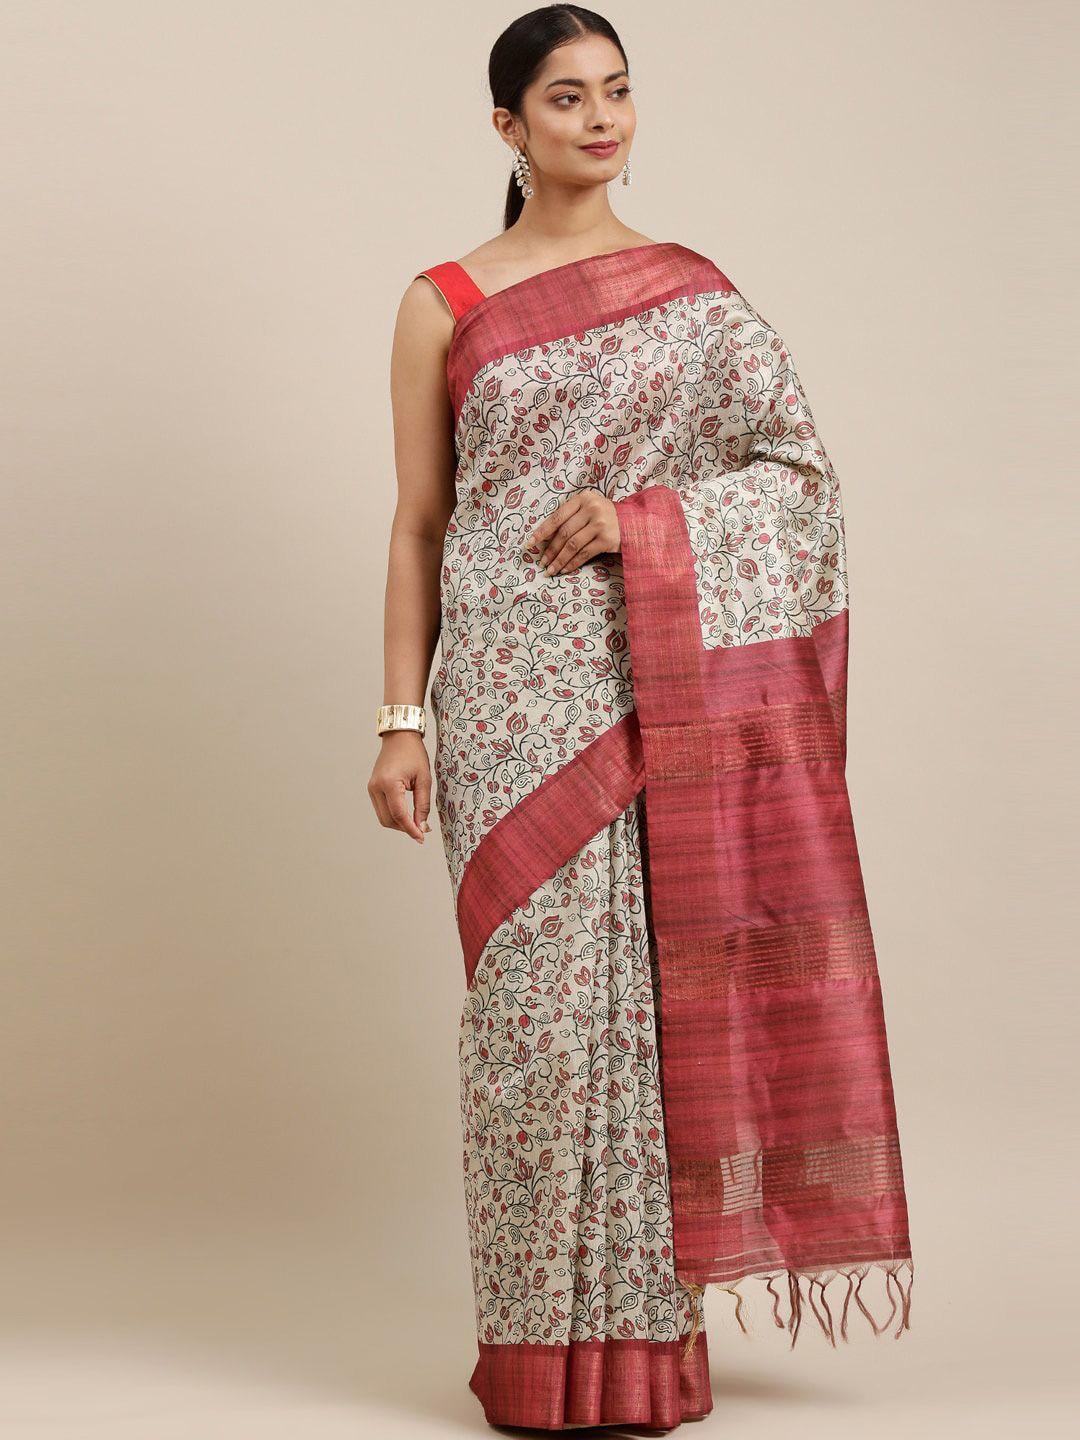 the-chennai-silks-beige-&-pink-floral-zari-fusion-saree